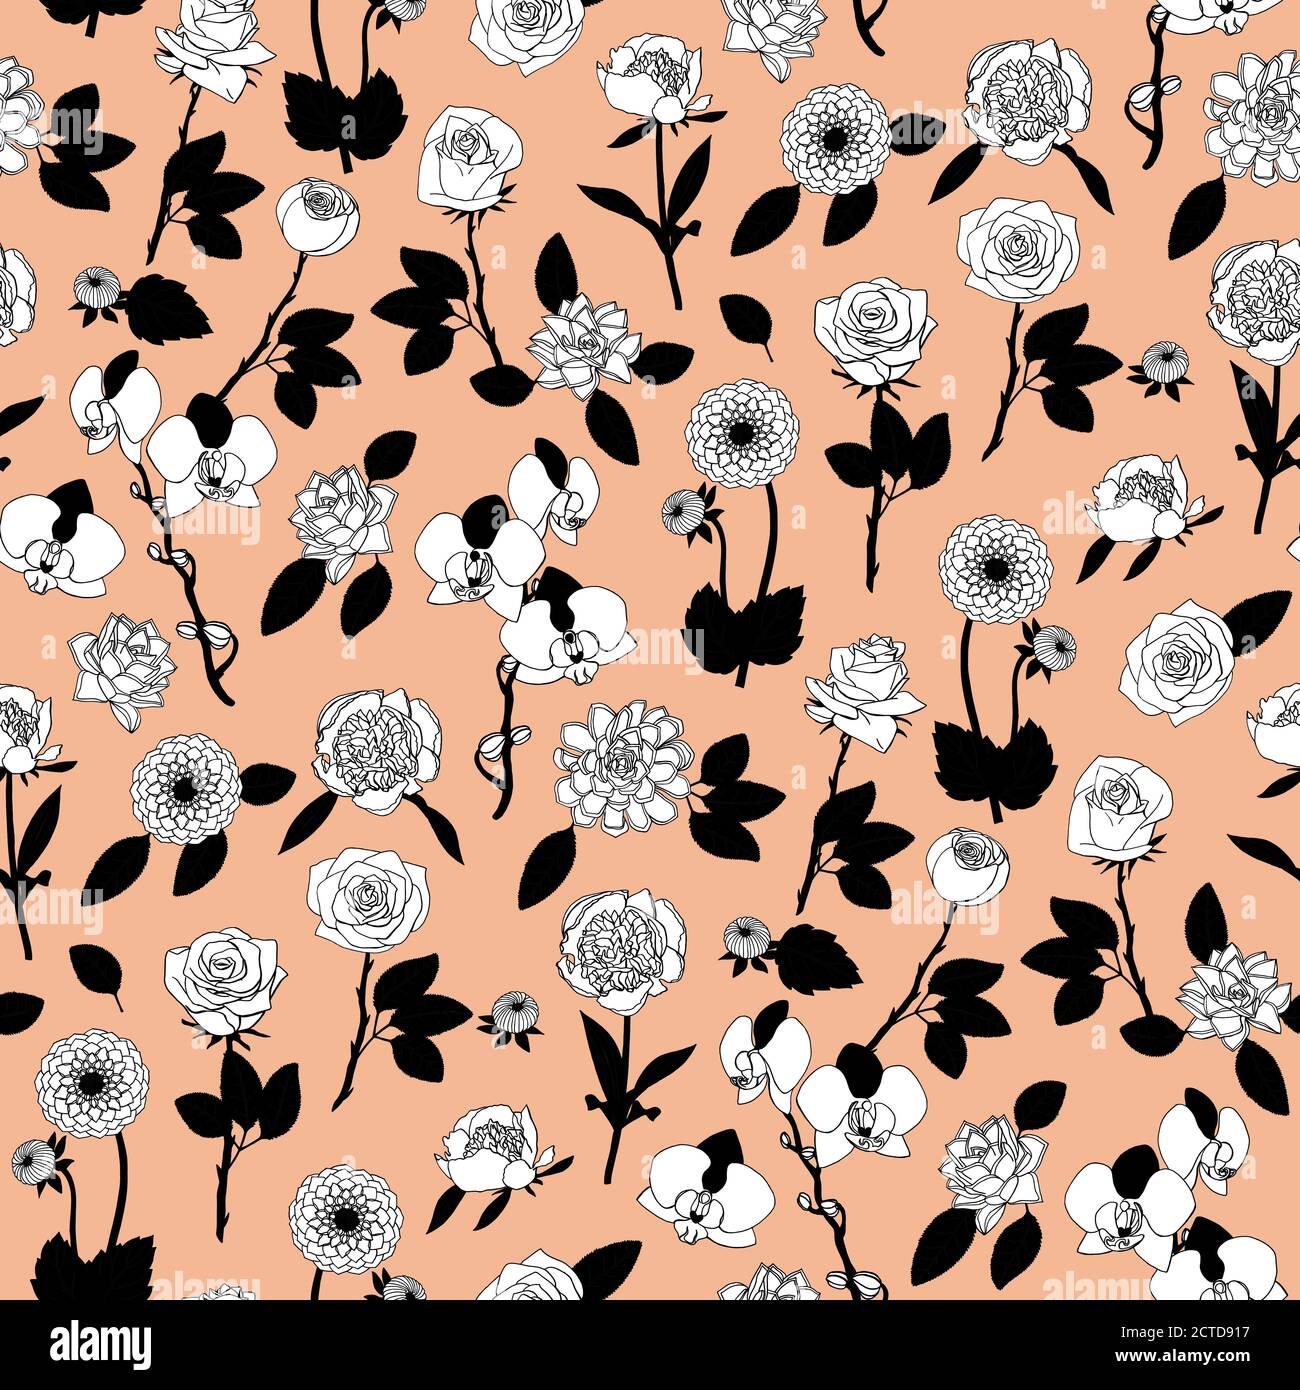 Schwarz-weiß florales Nahtloses Muster mit handgezeichneten Blumen auf rosa Hintergrund. Stock-Vektor Stock Vektor